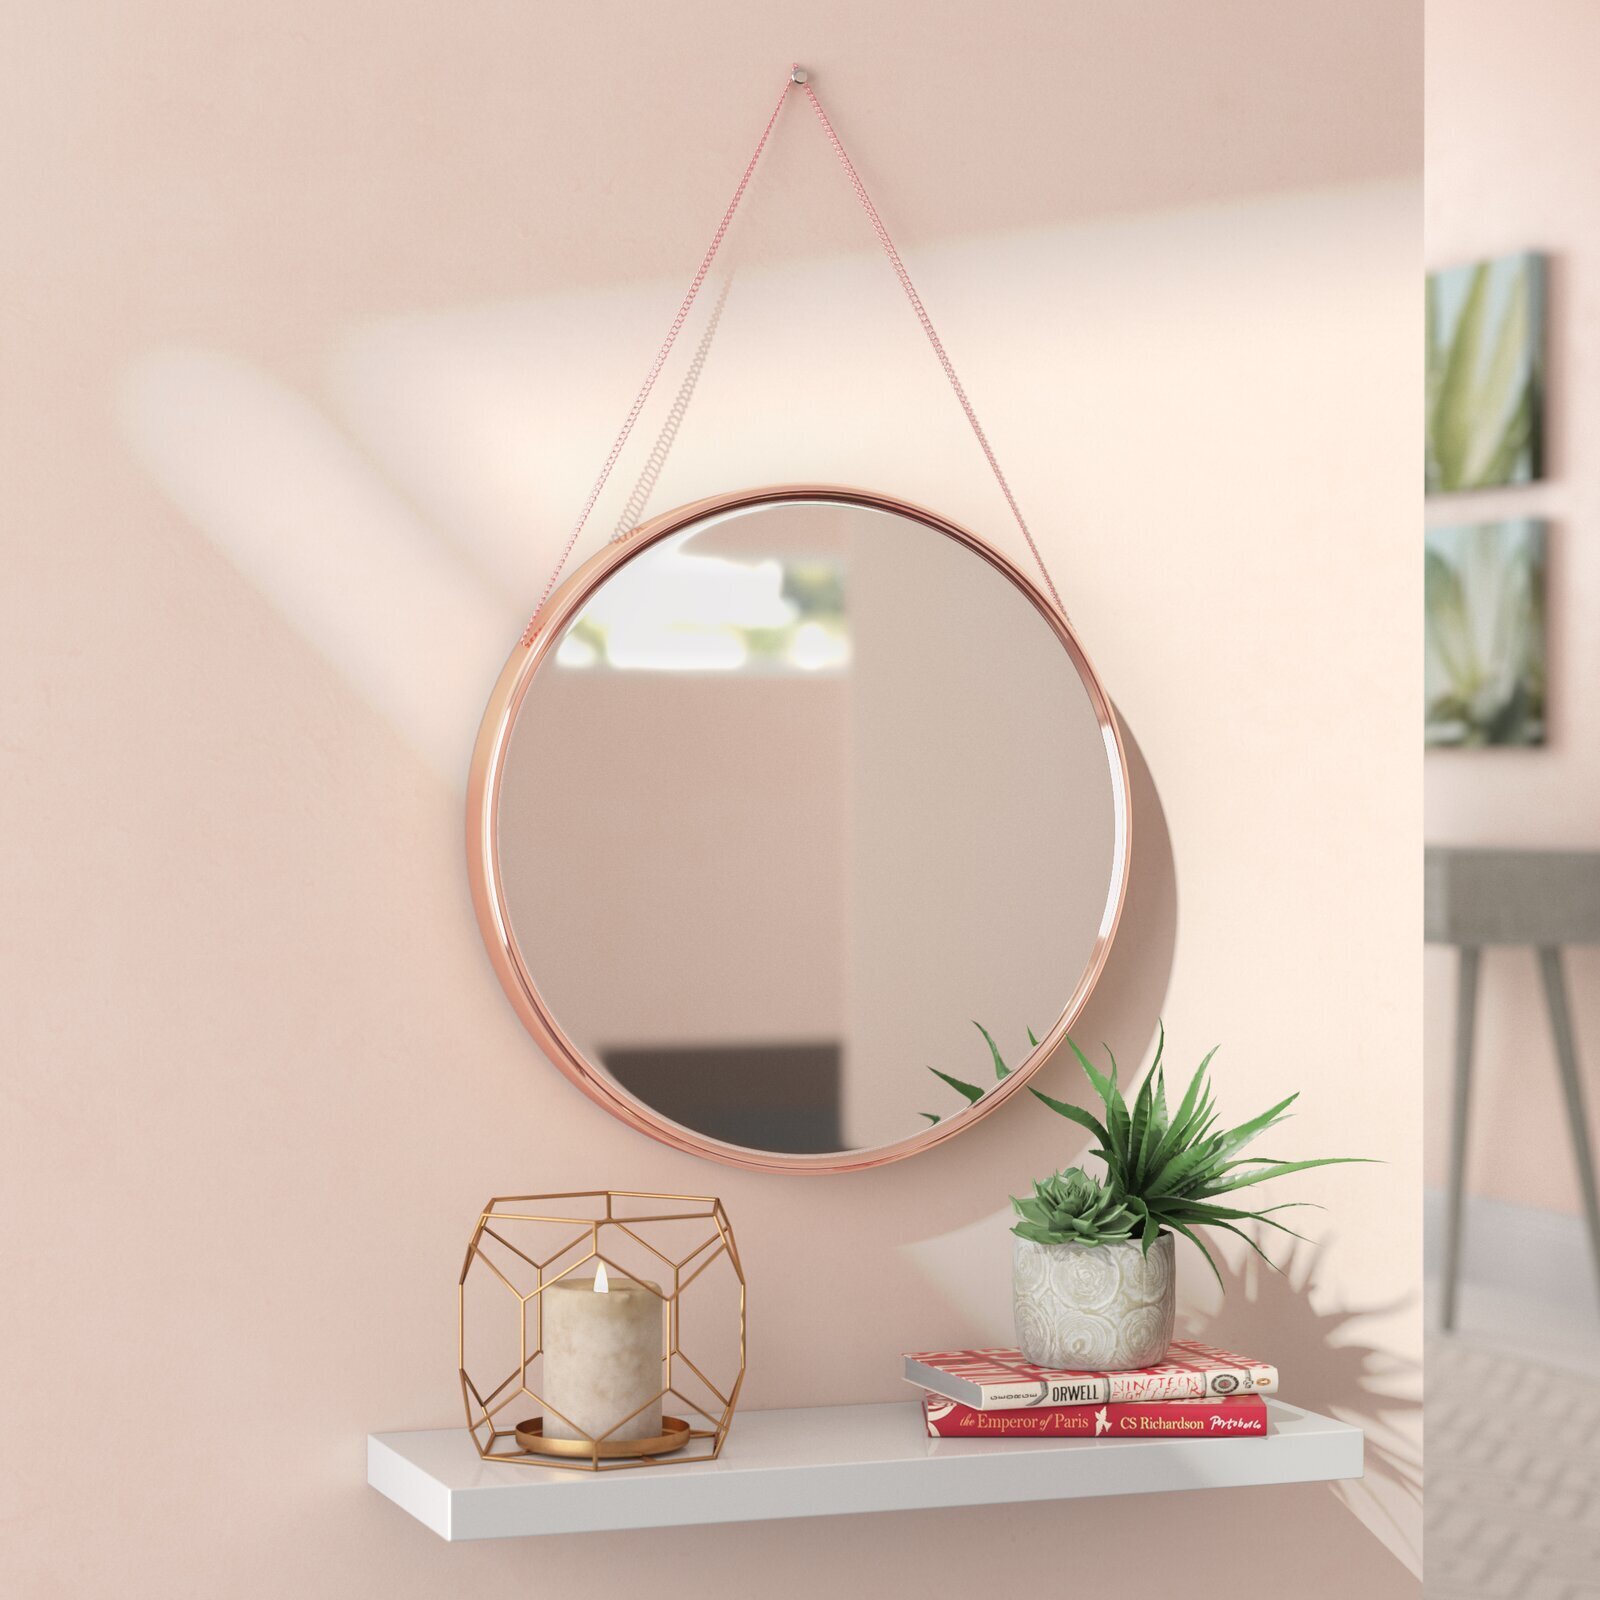 Round mirror frame with hanger